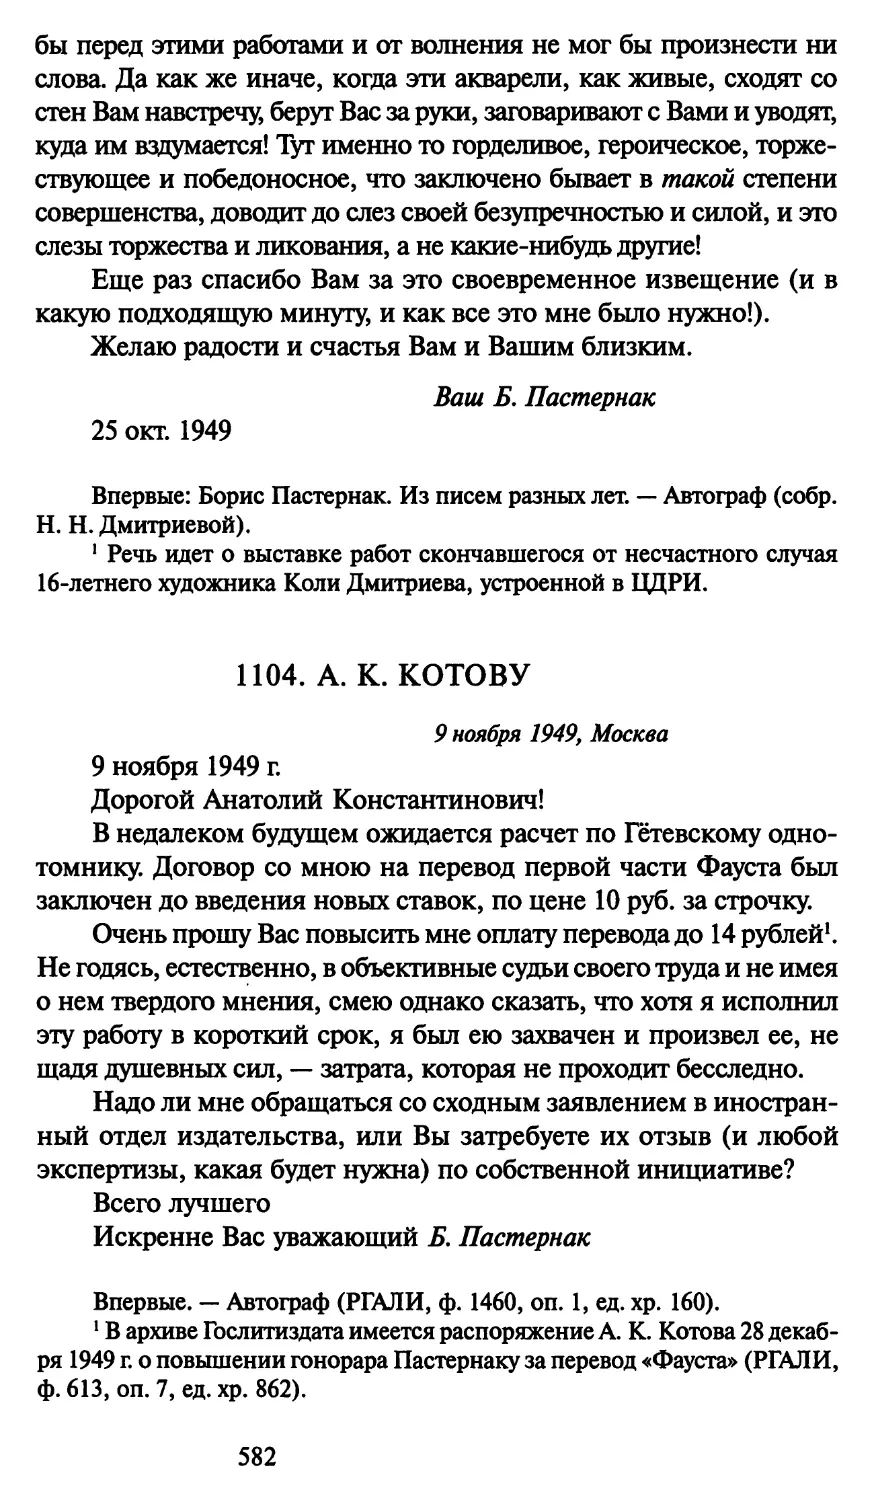 1104. А. К. Котову 9 ноября 1949